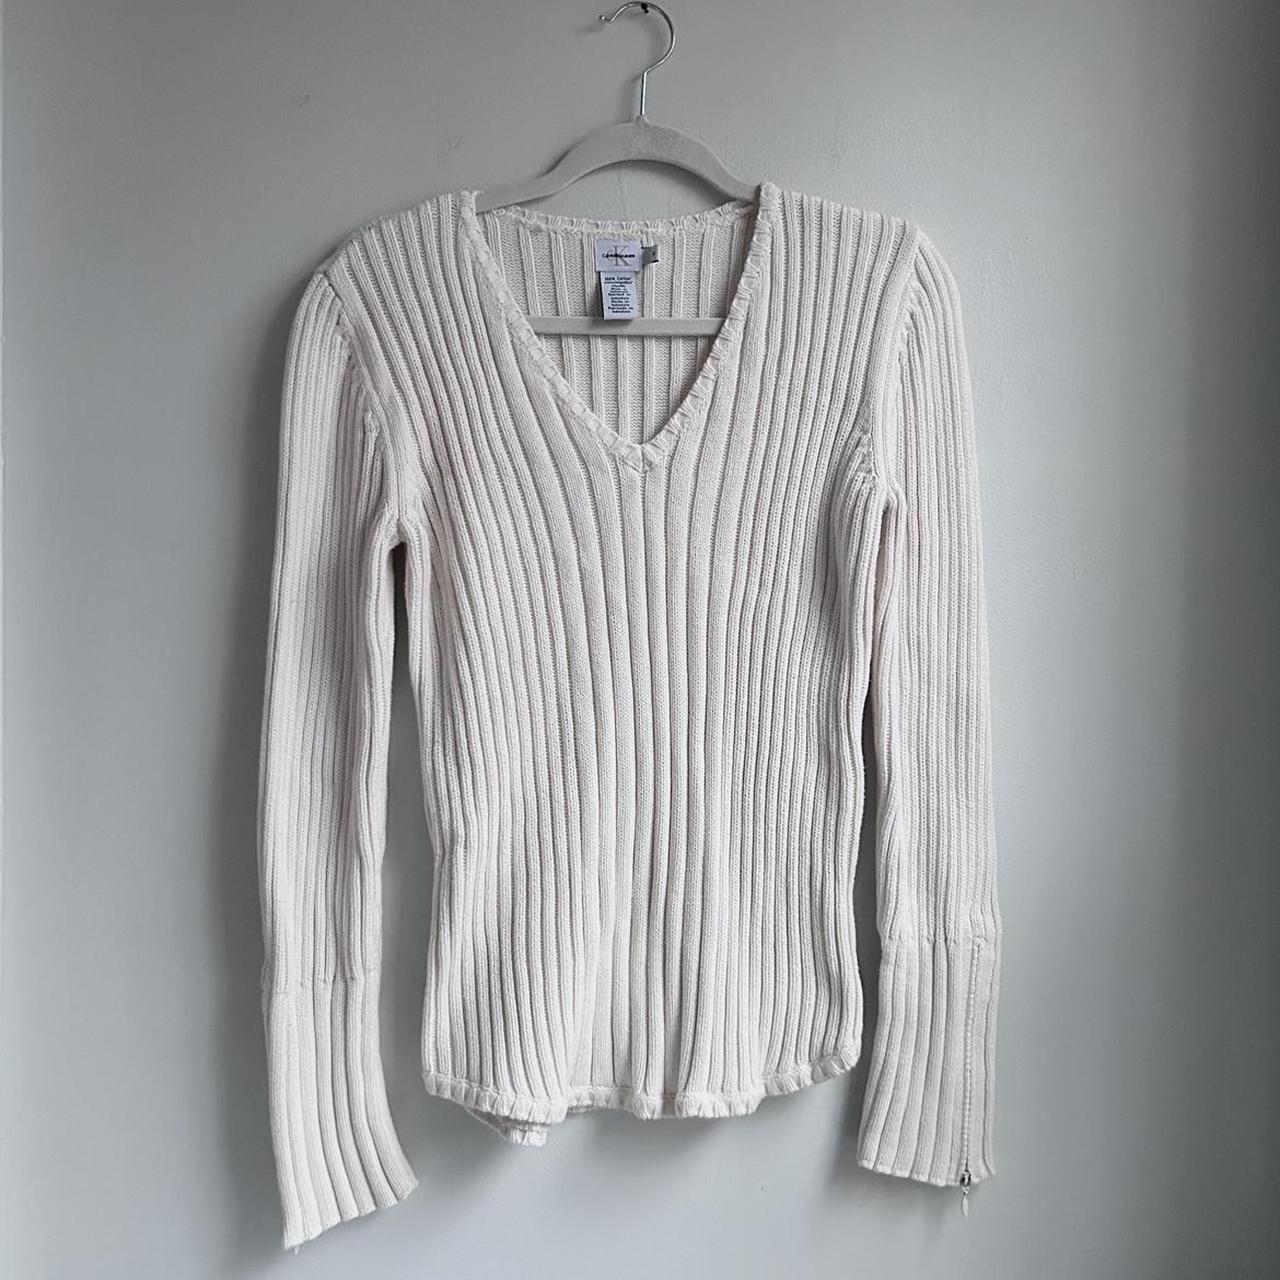 Calvin Klein structured knit sweater- marled cream - Depop